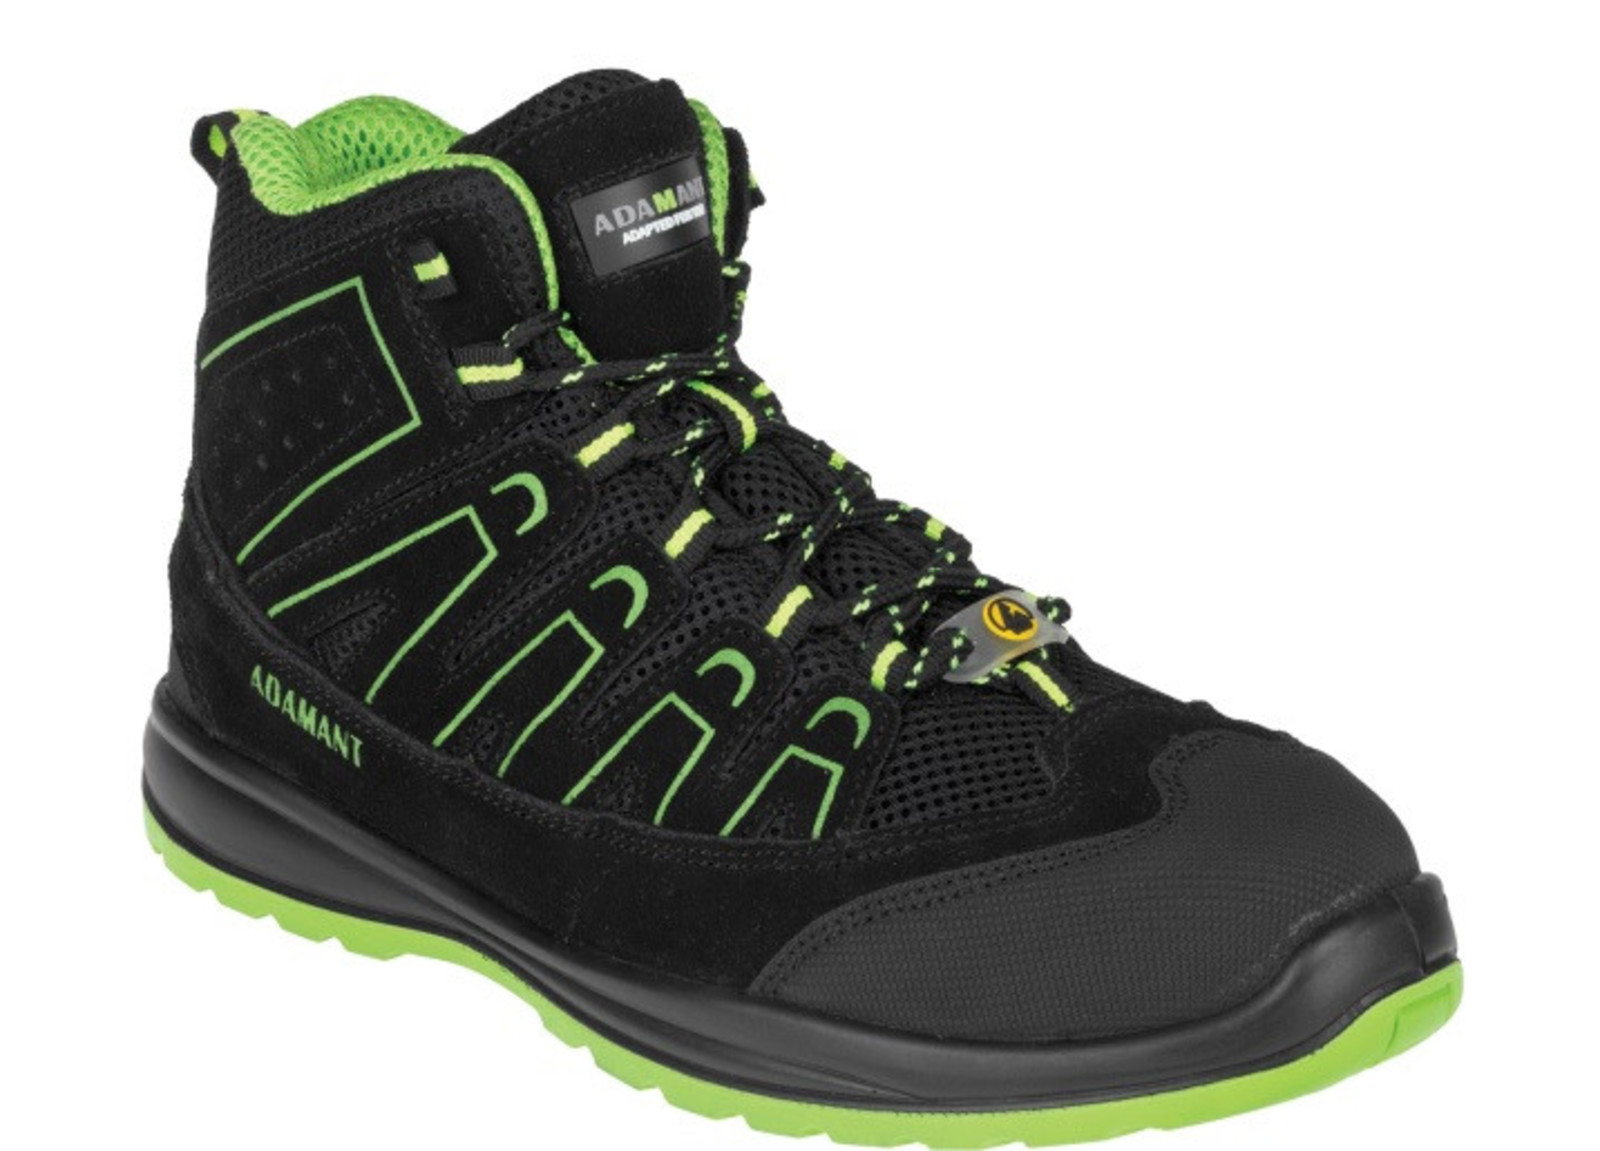 Bezpečnostná obuv Adamant Alegro S1P ESD - veľkosť: 36, farba: čierna/zelená